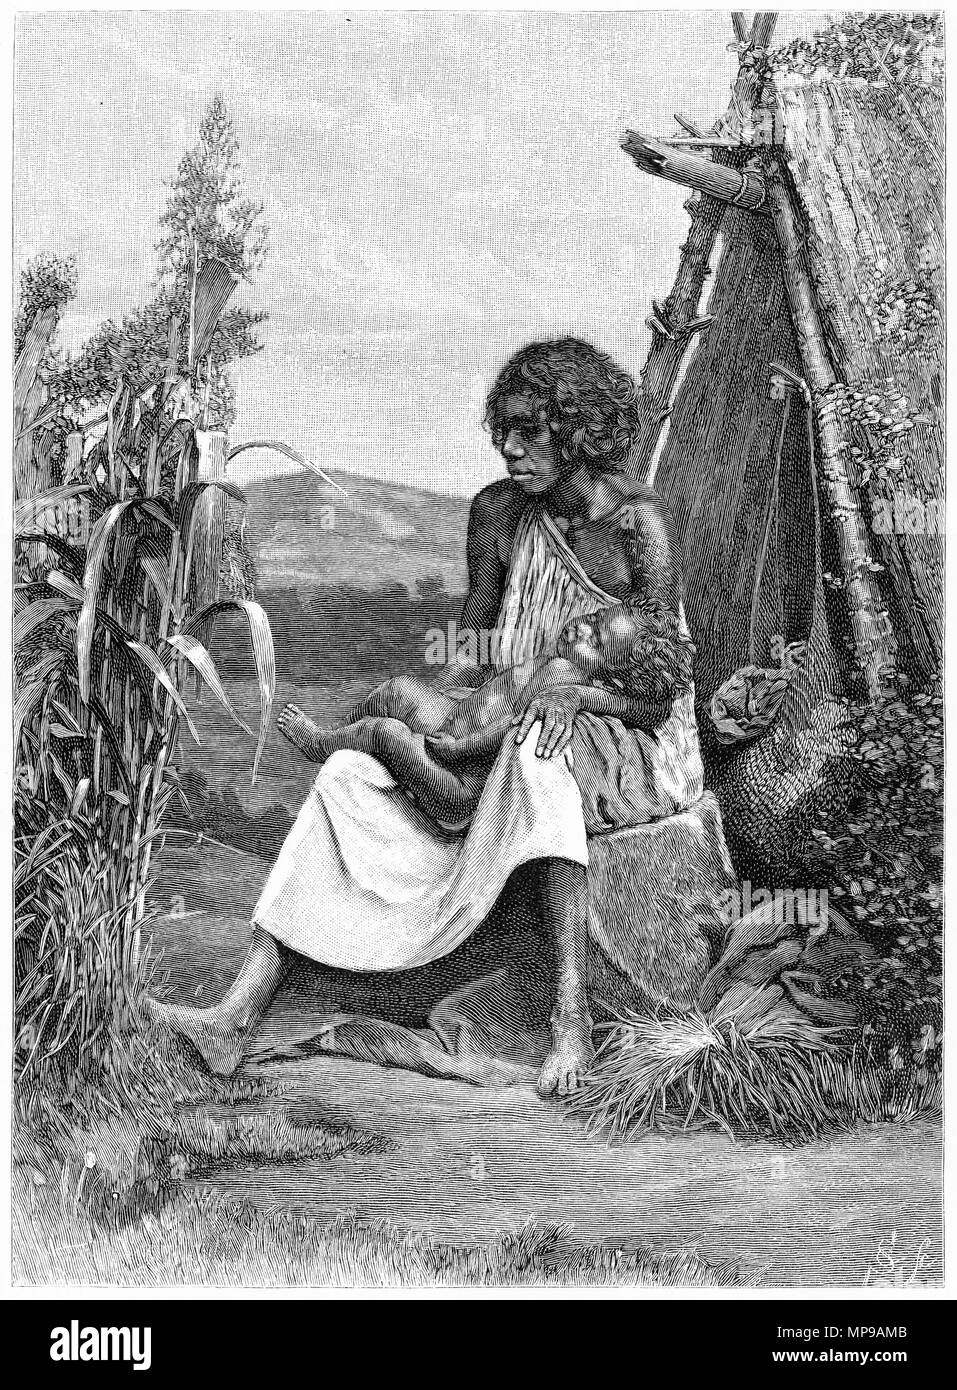 Gravure d'une mère autochtone et son enfant, de l'Australie. À partir de l'Atlas pittoresque d'Australasie Vol 3, 1886 Banque D'Images